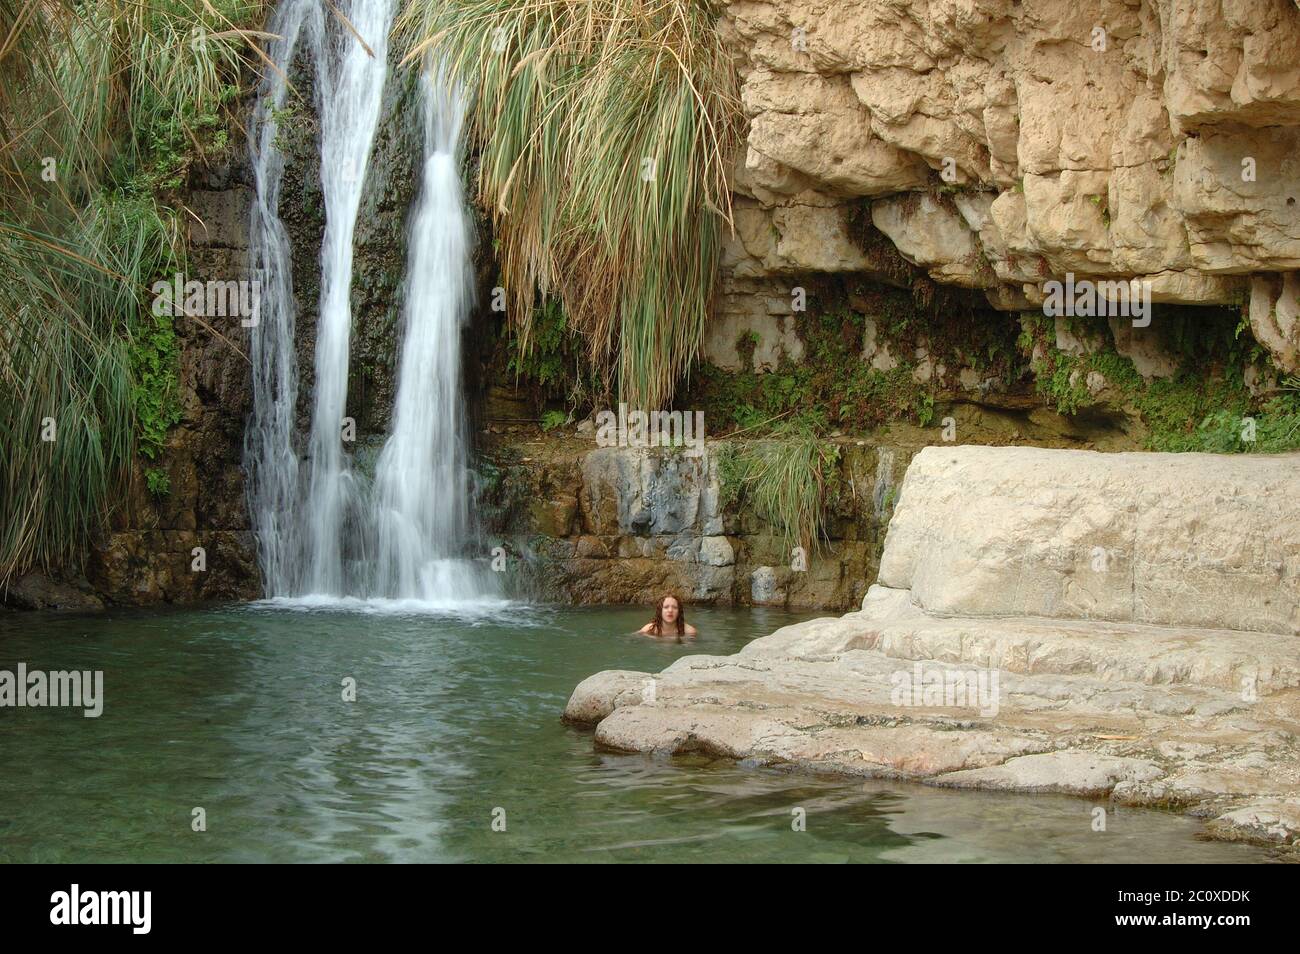 Ein Gedi waterfall. Israel Stock Photo